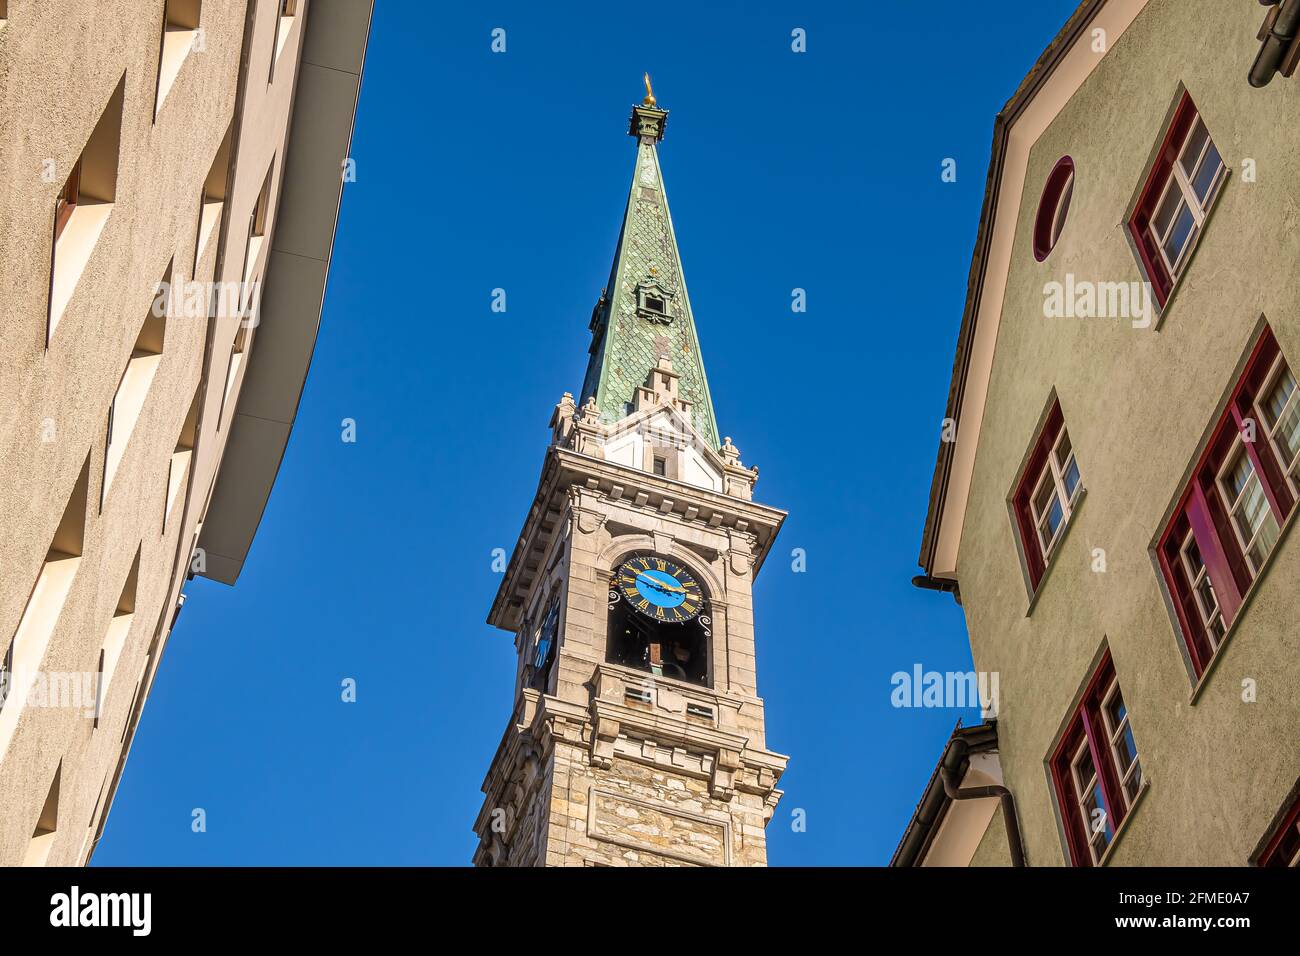 St. Moritz, Schweiz - 26. November 2020: Der Glockenturm der reformierten Kirche in der Altstadt von St. Moritz, dem berühmten schweizer Luxusresort. Stockfoto